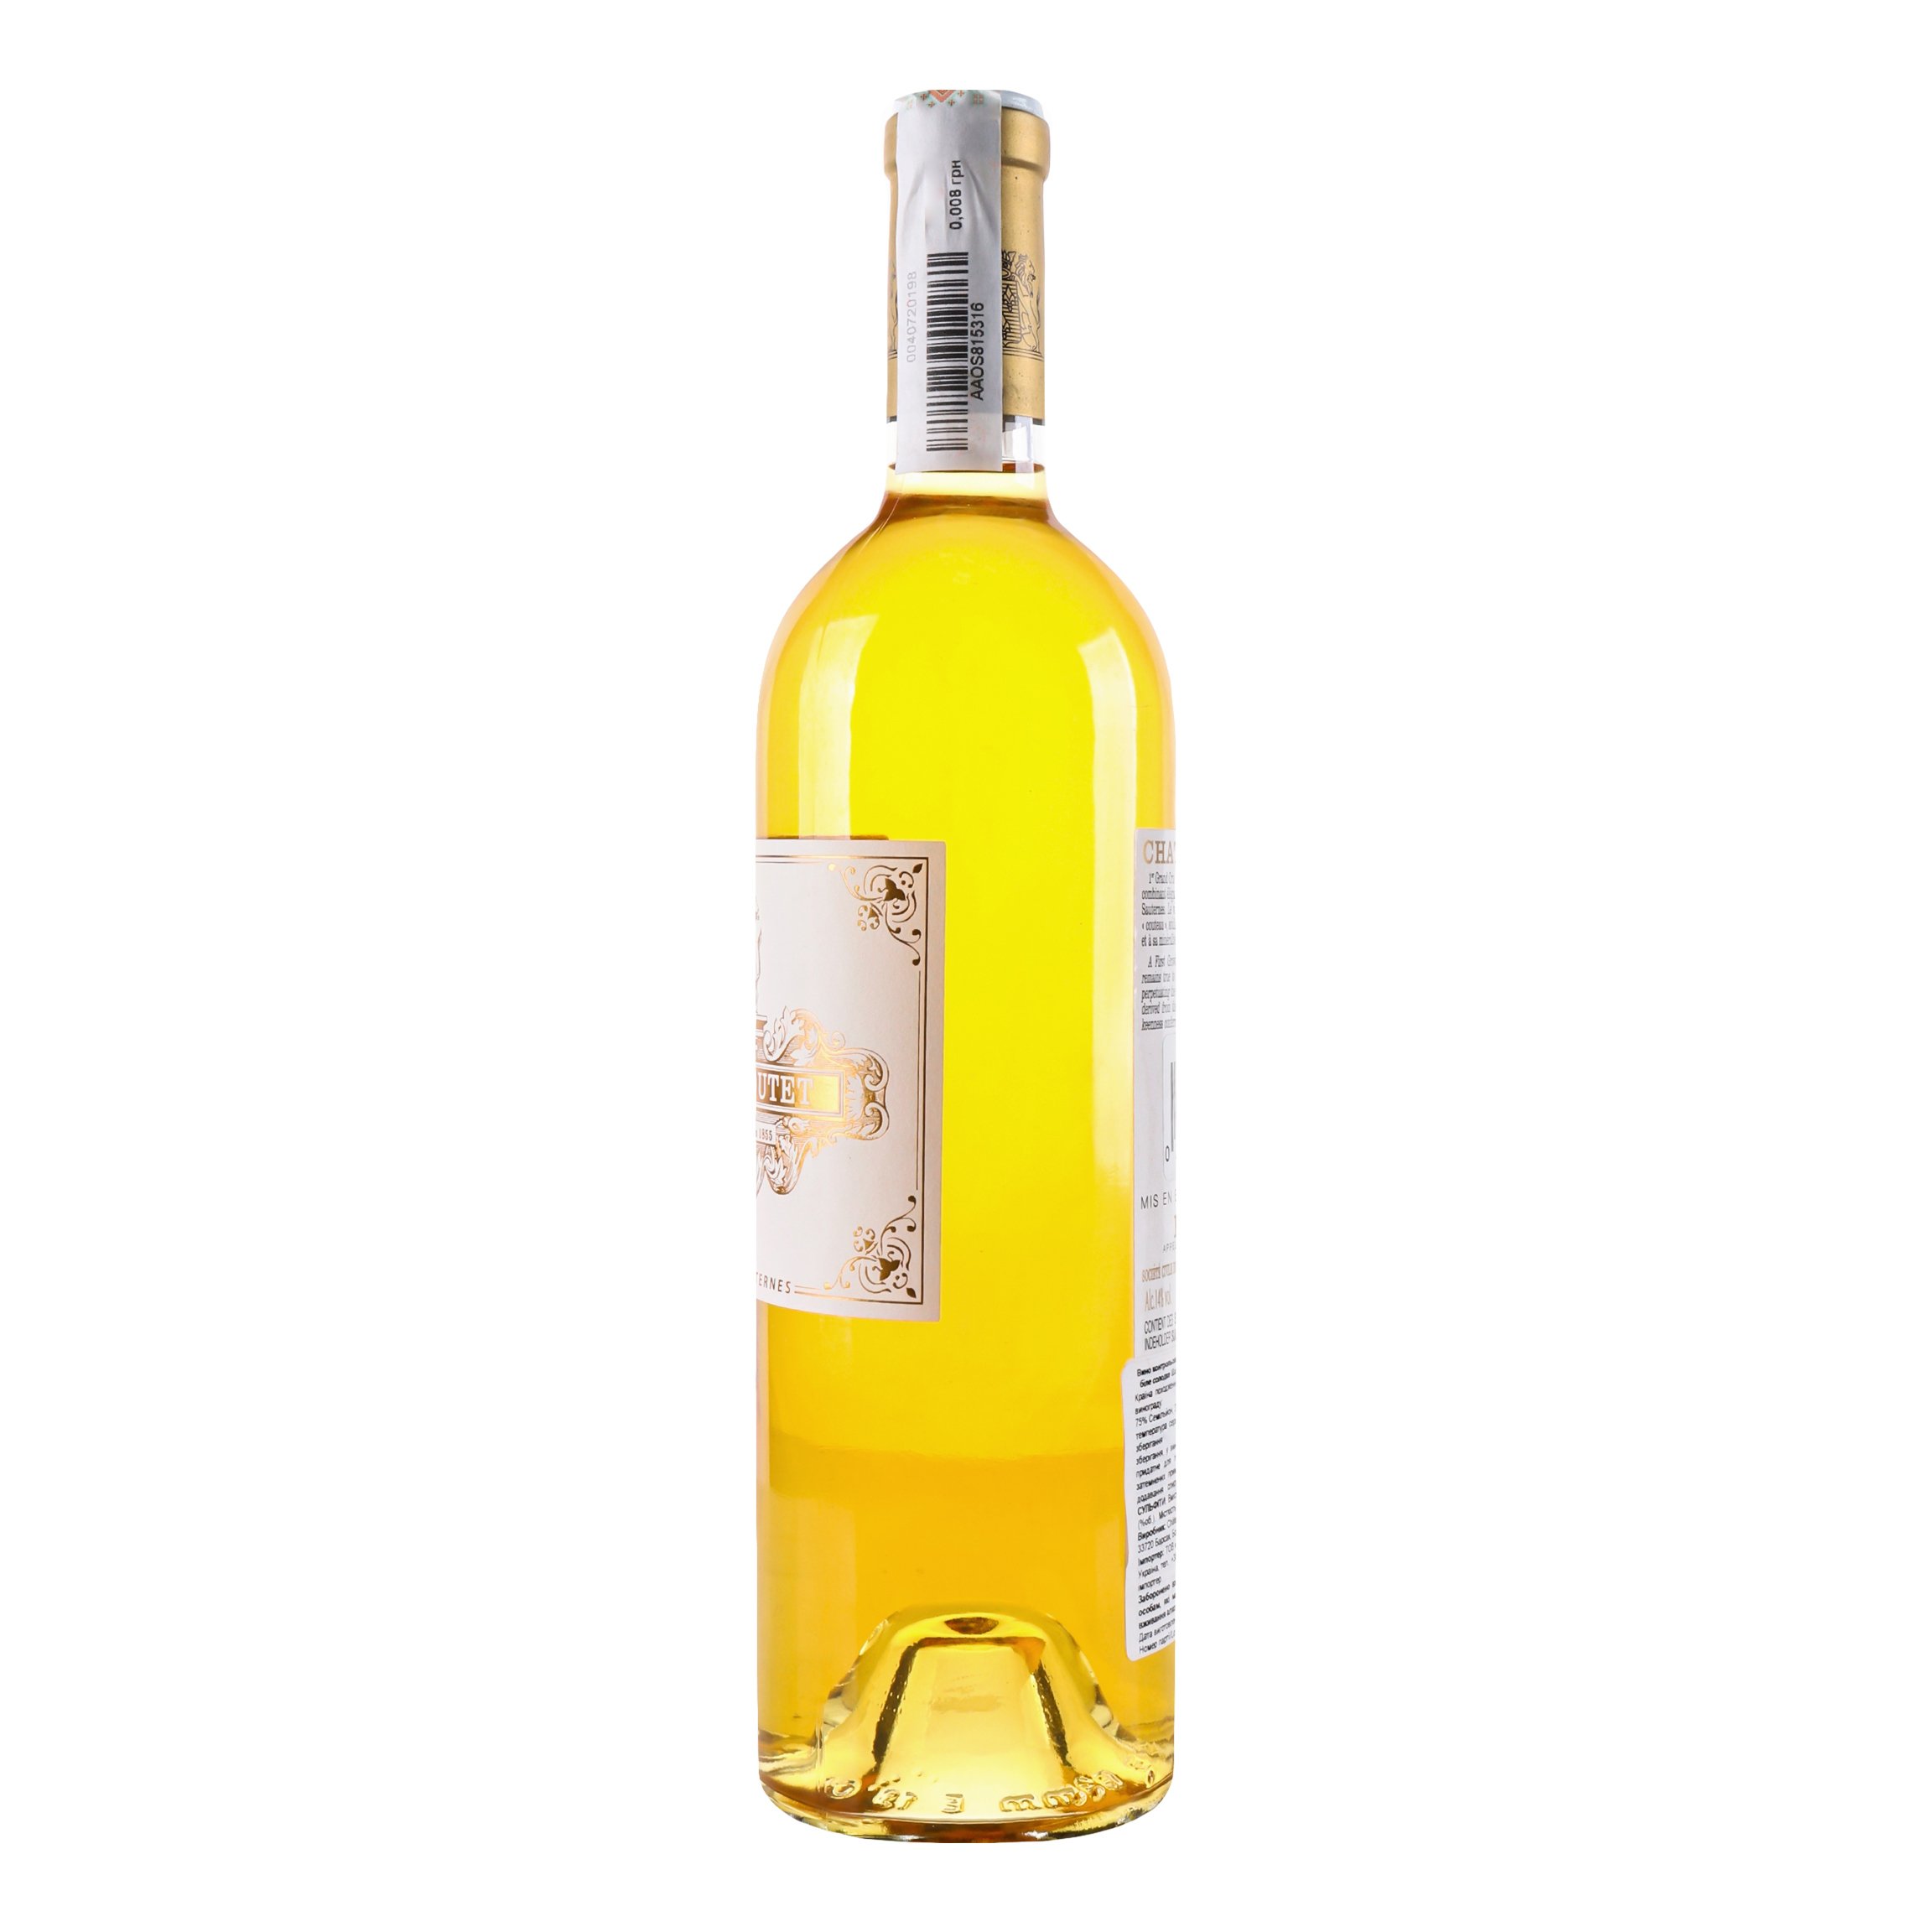 Вино Chateau Coutet 2015 АОС/AOP, 14%, 0,75 л (839525) - фото 2